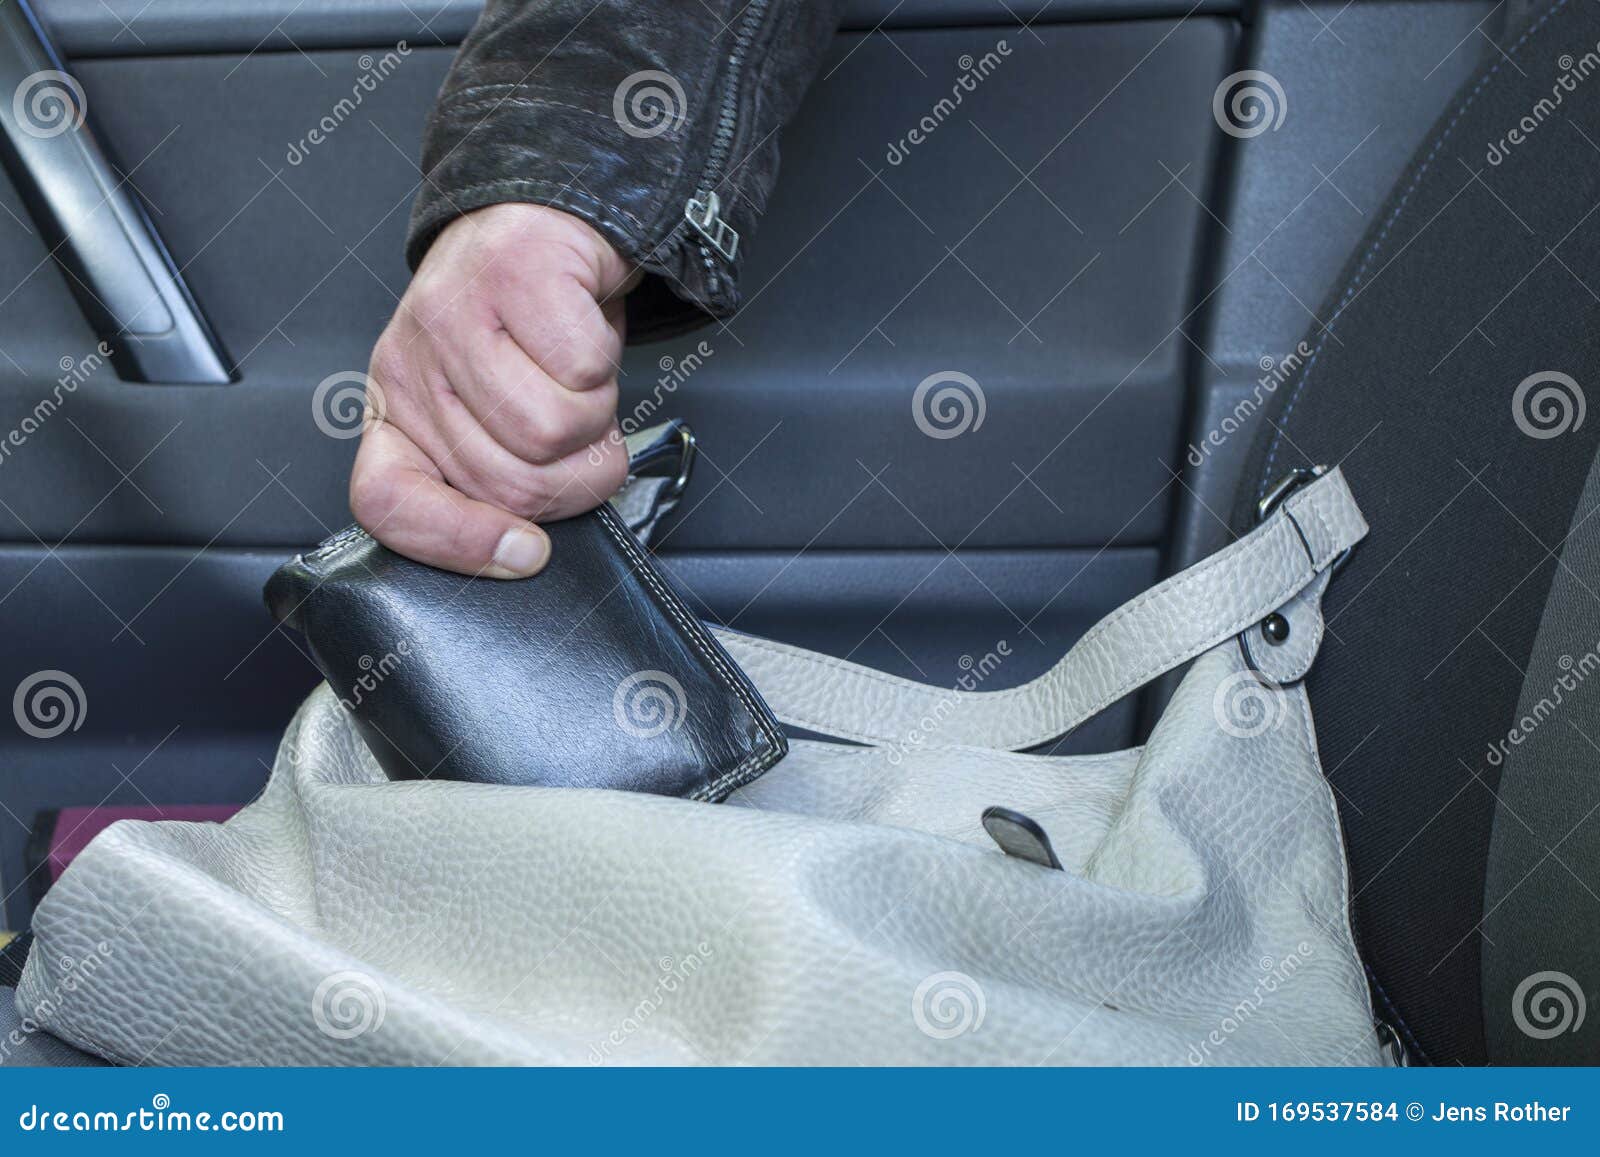 小偷从车里偷钱包照片摄影图片_ID:142028141-Veer图库